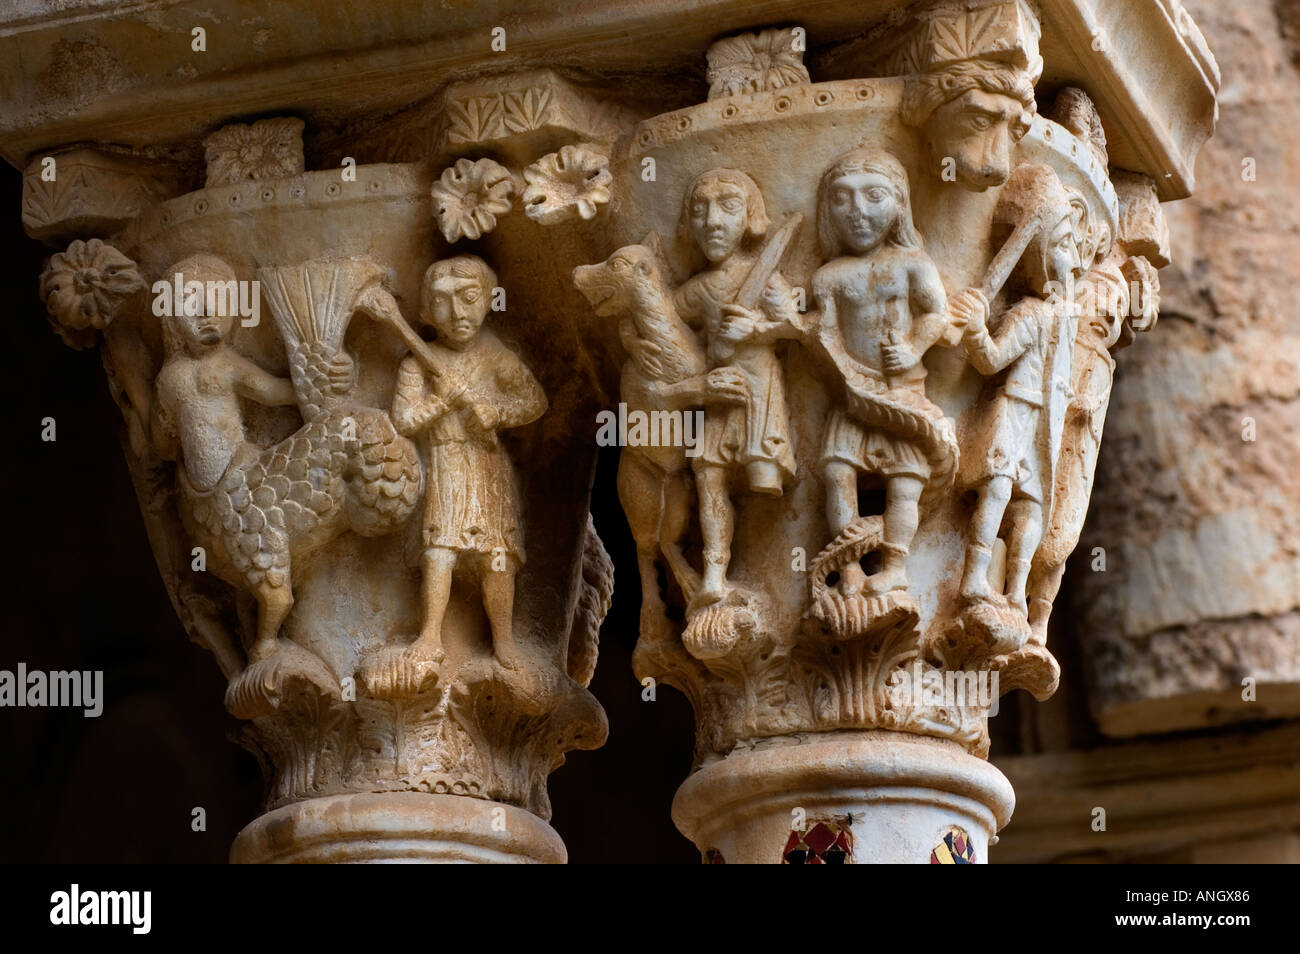 Cattedrale di Monreale, Cattedrale di Santa Maria Nuova di Monreale, Palermo, Sicilia, Grande esempio di architettura normanna, mosaici bizantini Foto Stock